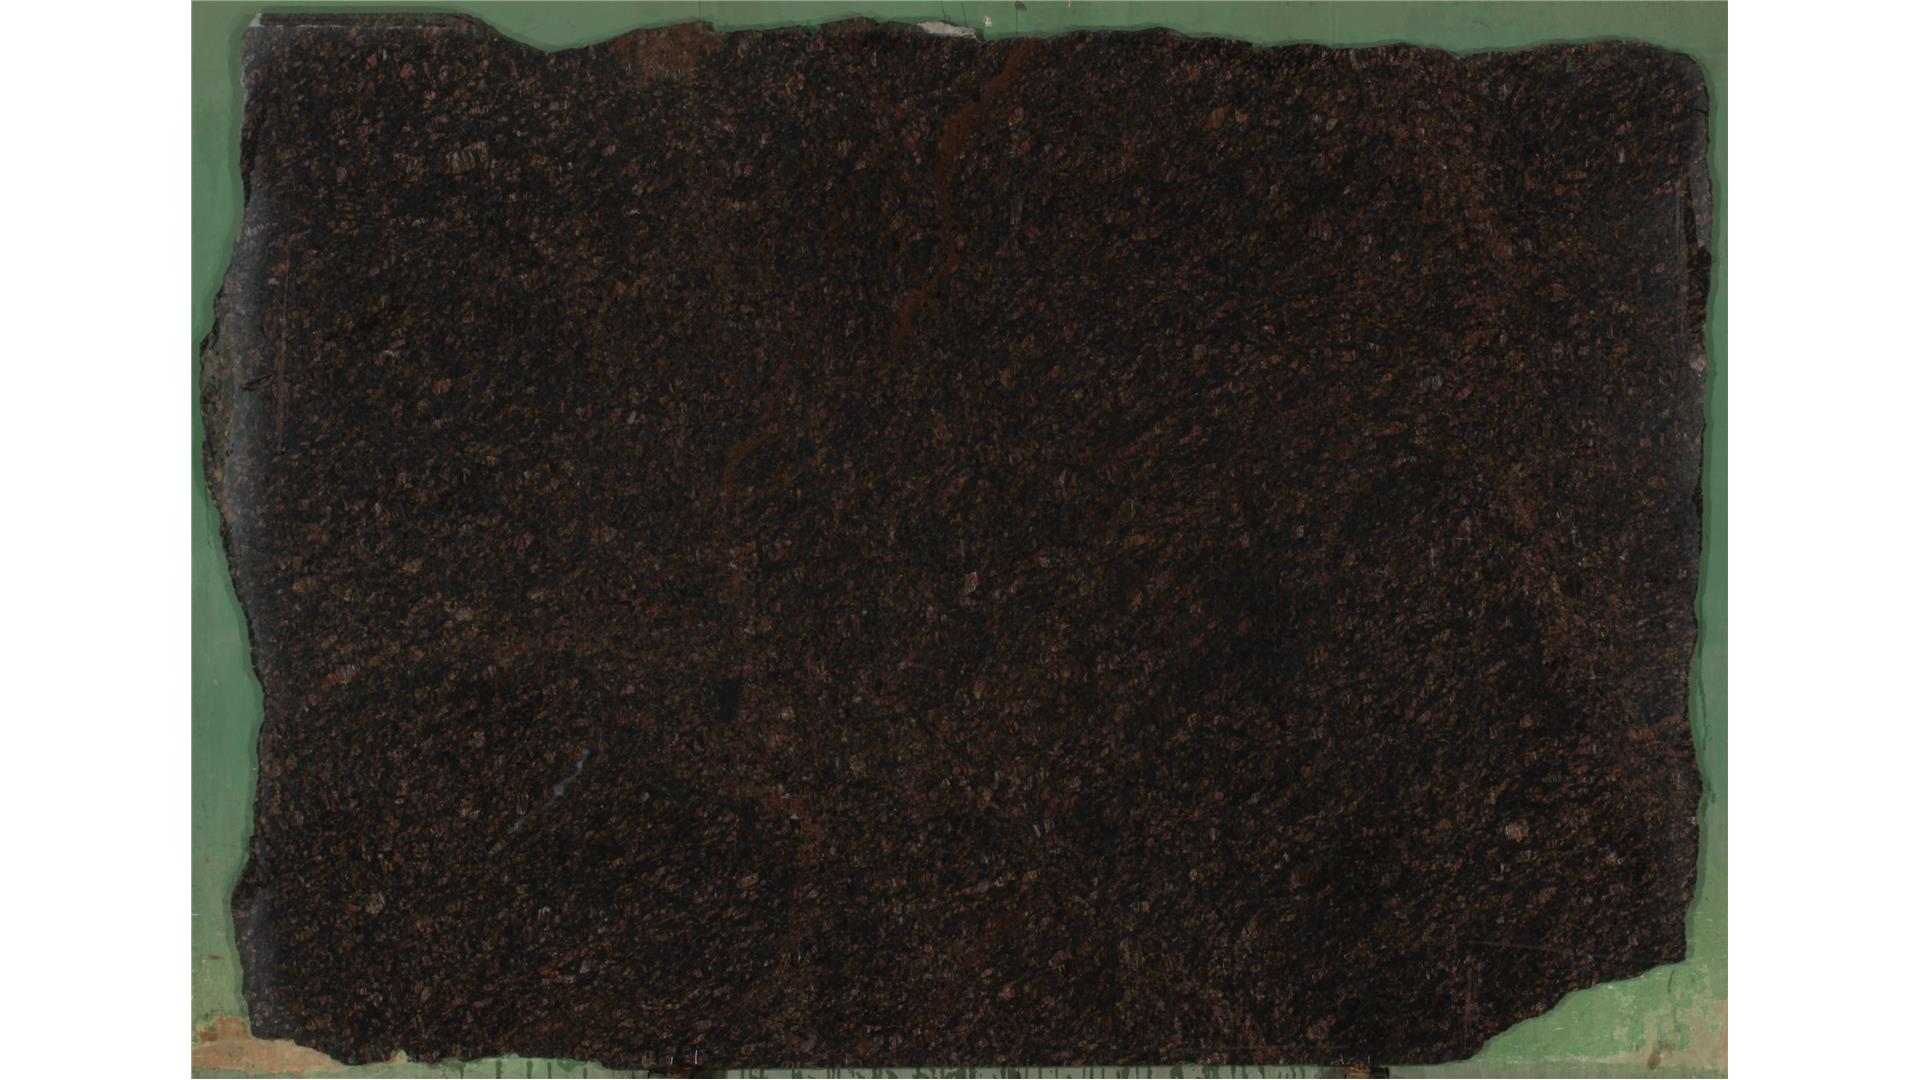 Tan Brown 2 cm Granite Slabs